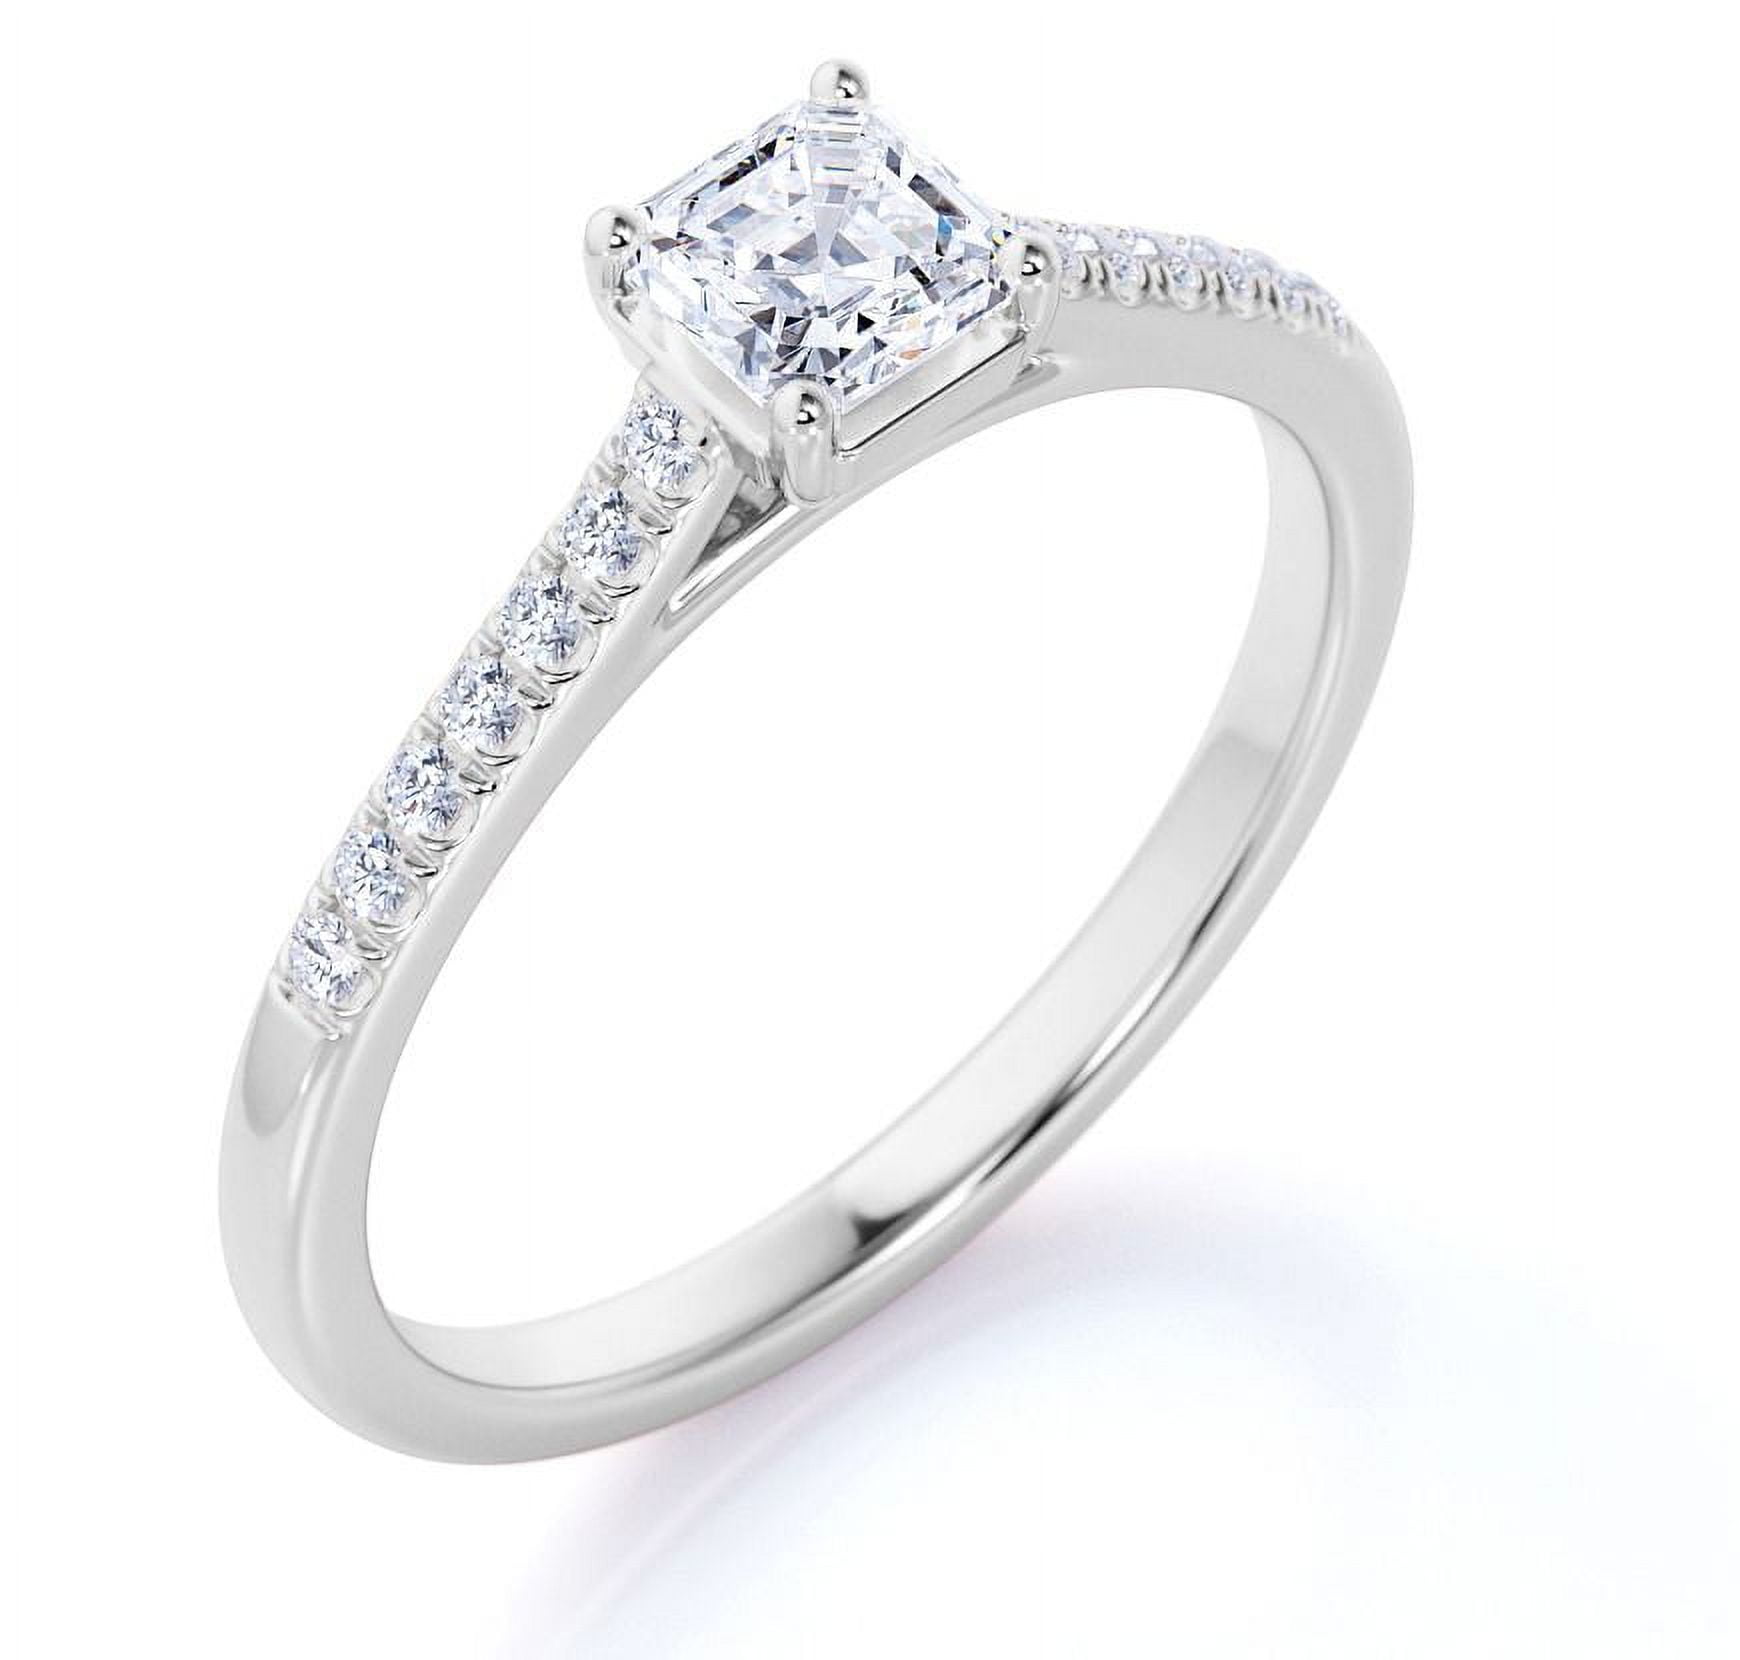 Princess Cut Tension Set Engagement Ring Setting 18k White Gold - U3317